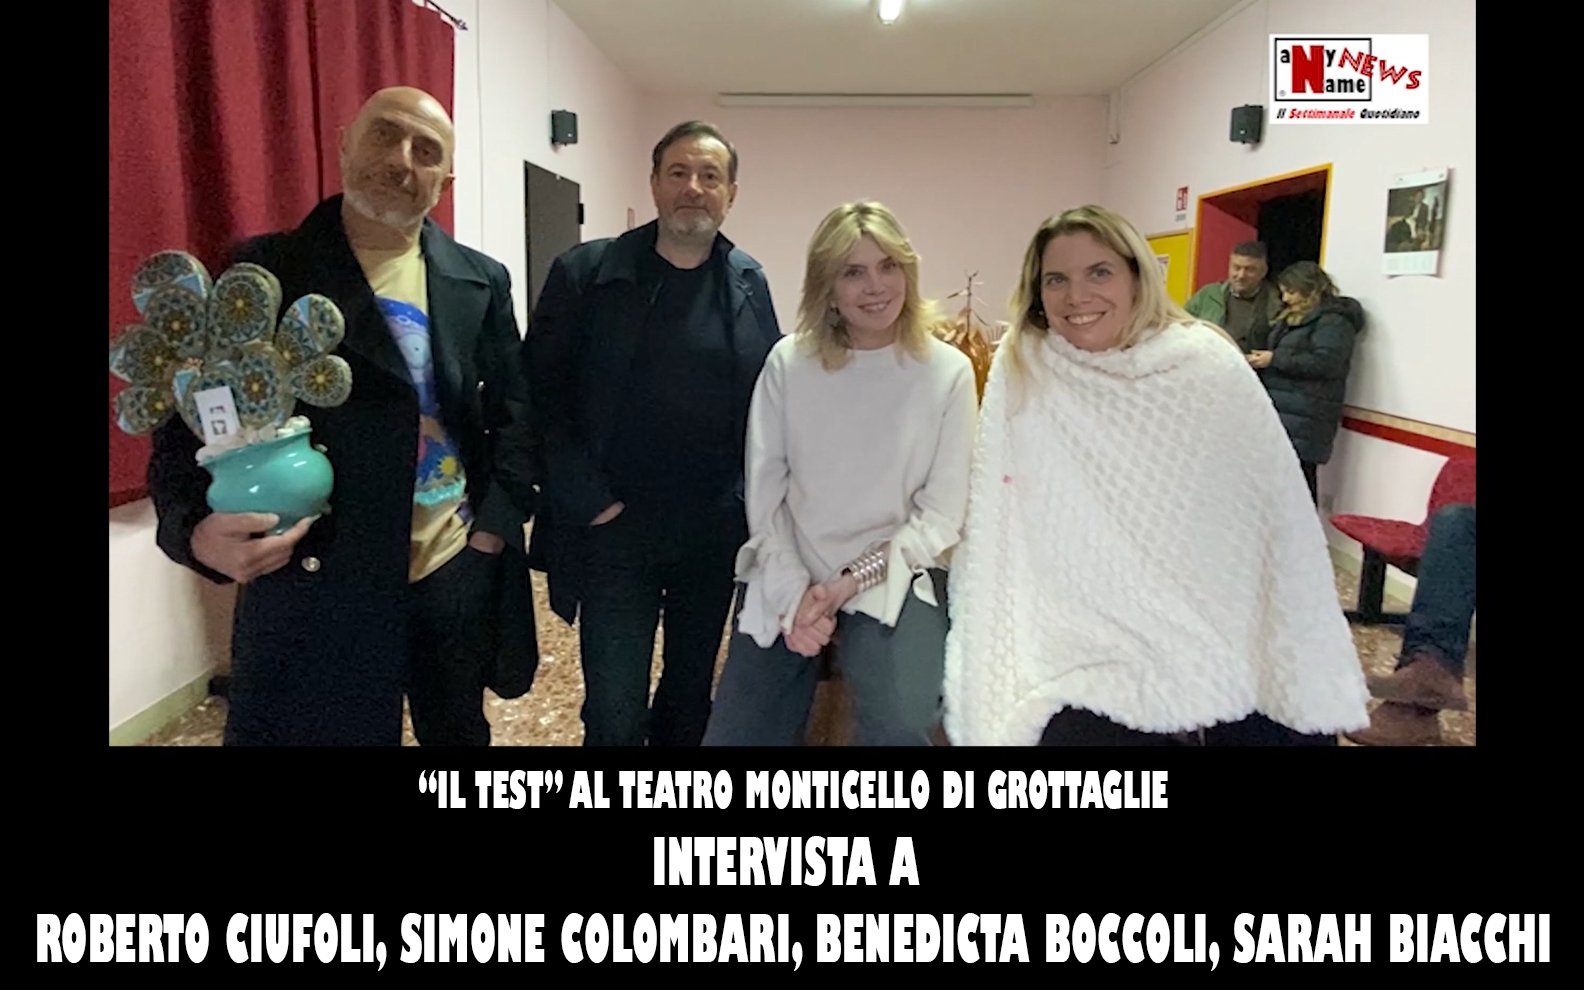 “Il test” al teatro Monticello di Grottaglie | Intervista a ROBERTO CIUFOLI, SIMONE COLOMBARI, BENEDICTA BOCCOLI e SARAH BIACCHI